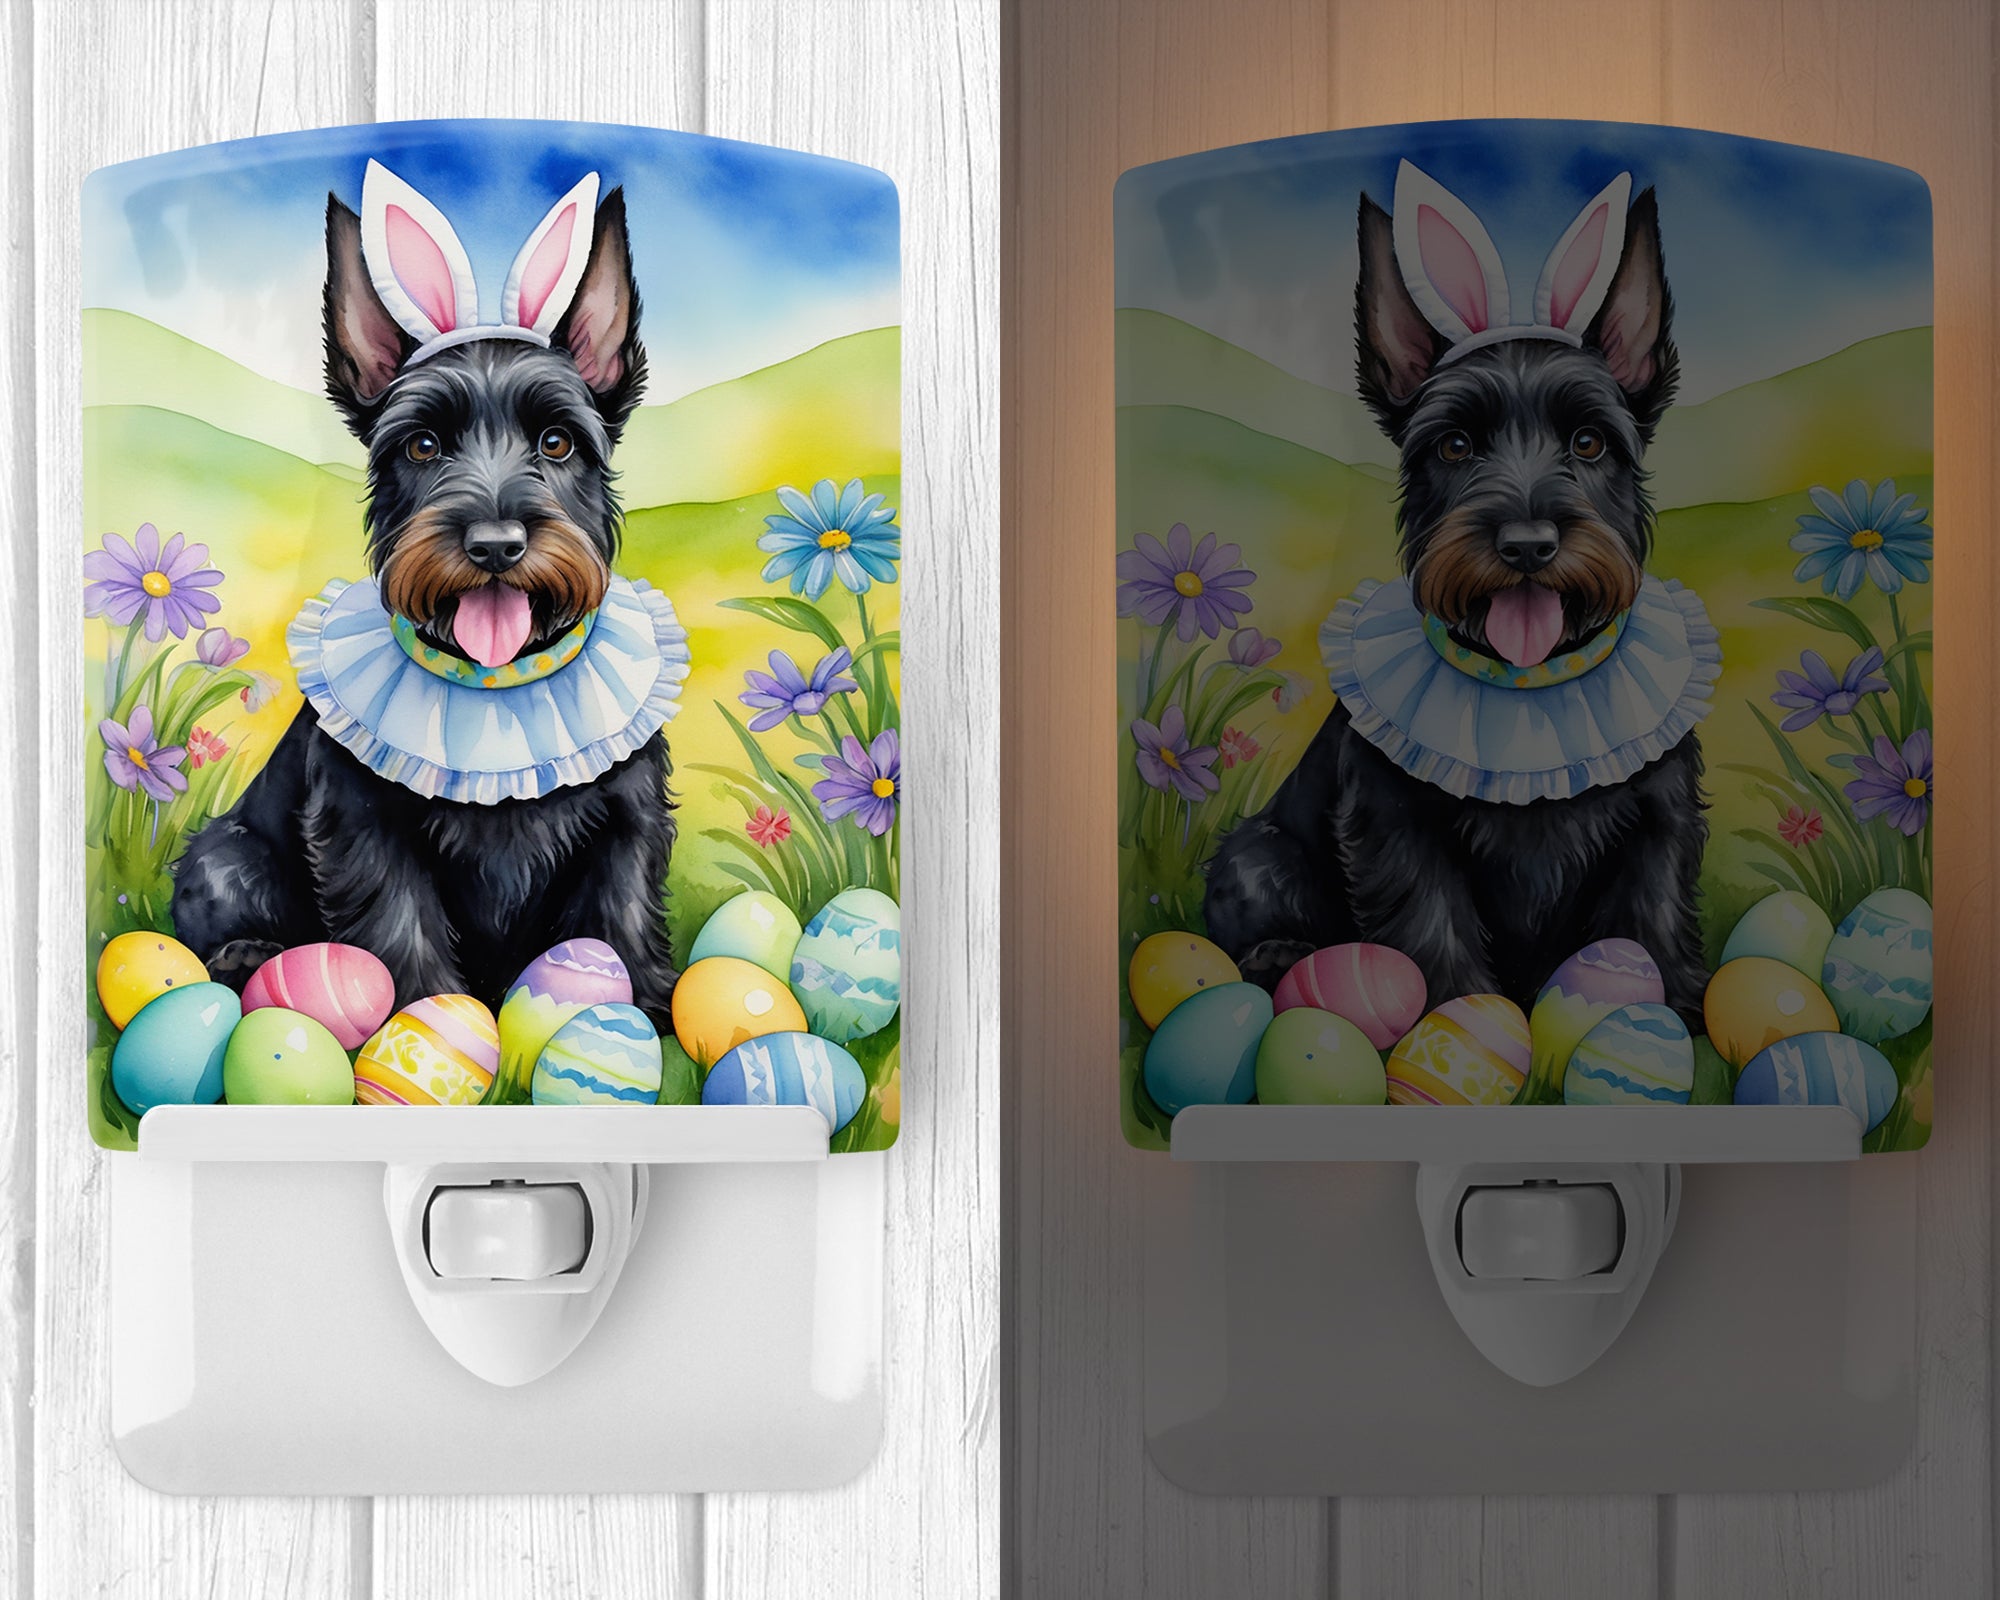 Scottish Terrier Easter Egg Hunt Ceramic Night Light